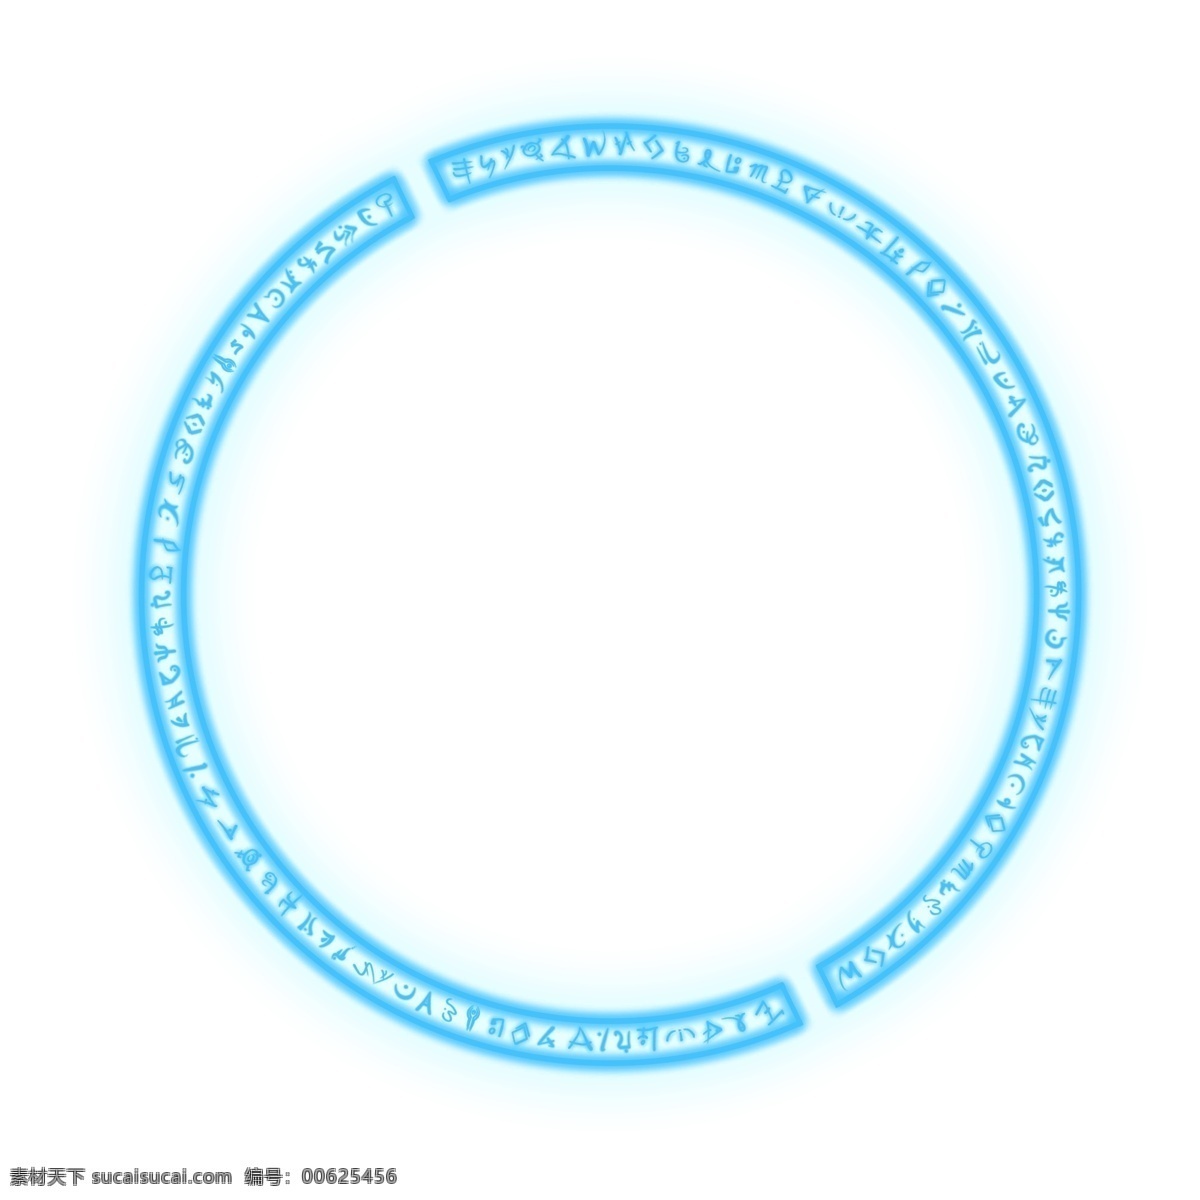 蓝色 圆形 圆环 透明 底 蓝色光环 魔法阵 光圈 光效 光环 免抠图 装饰图 光束 光点 插画 青色 圆环发光